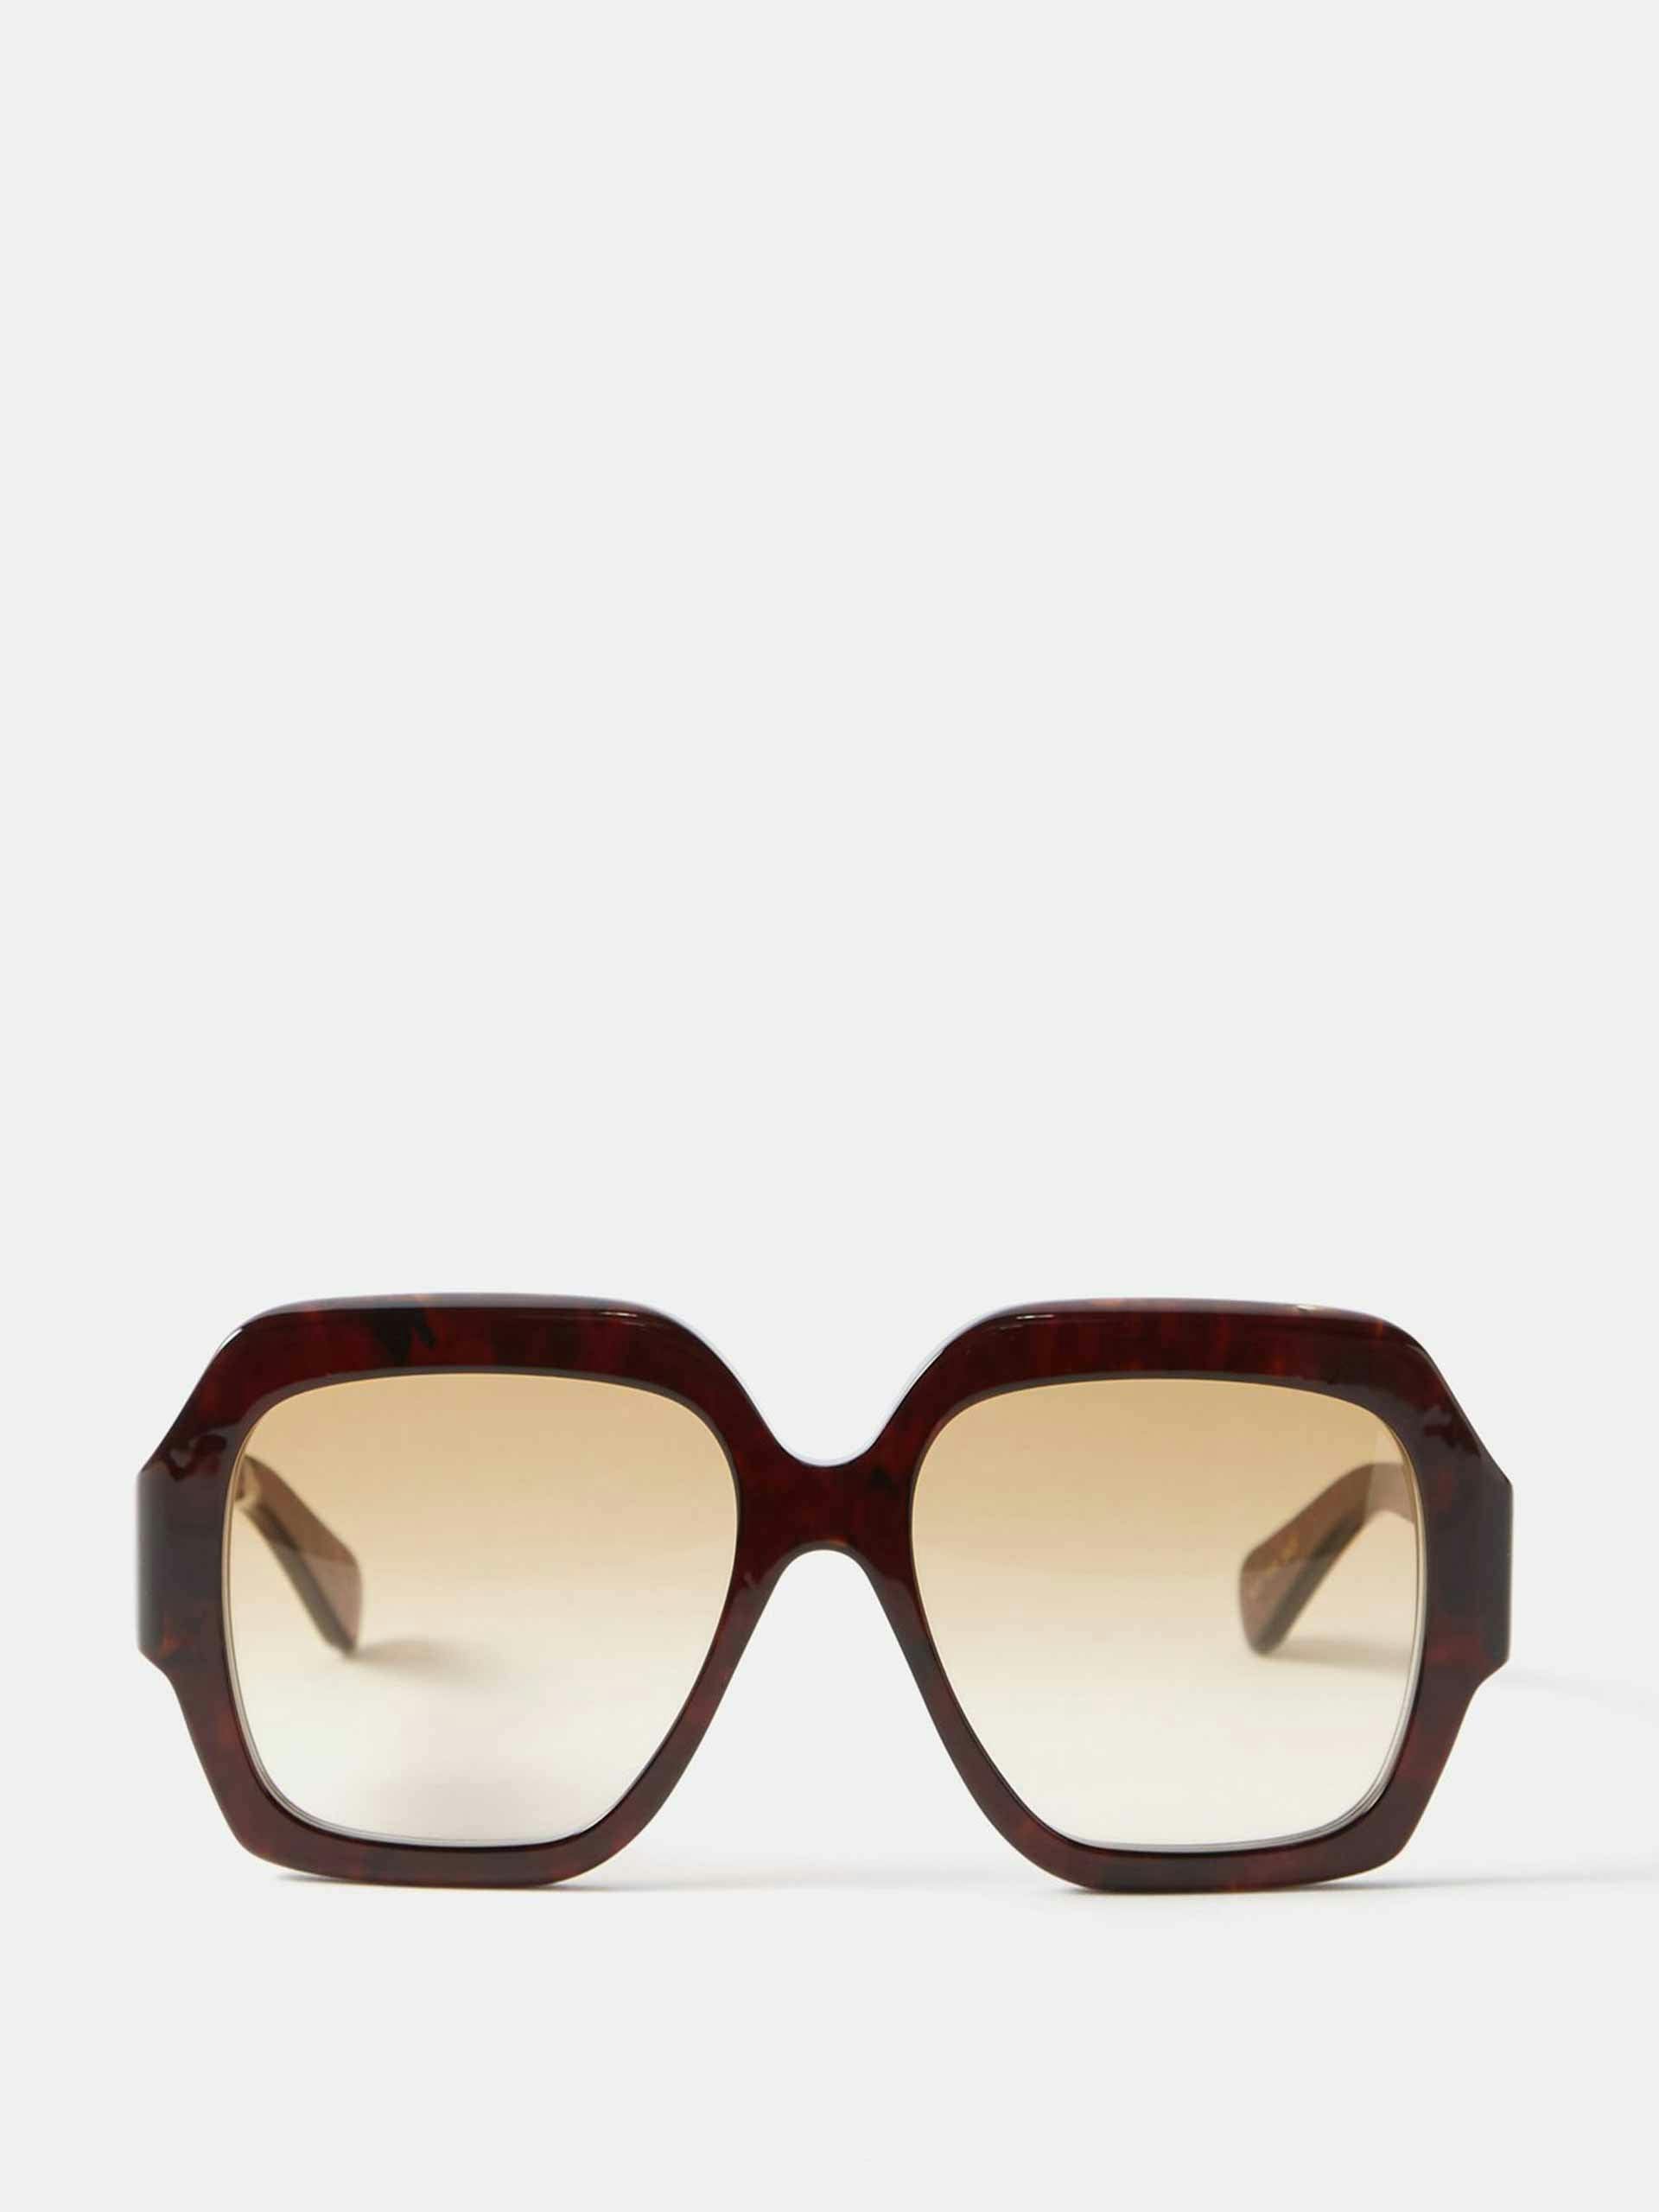 Brown tortoiseshell sunglasses